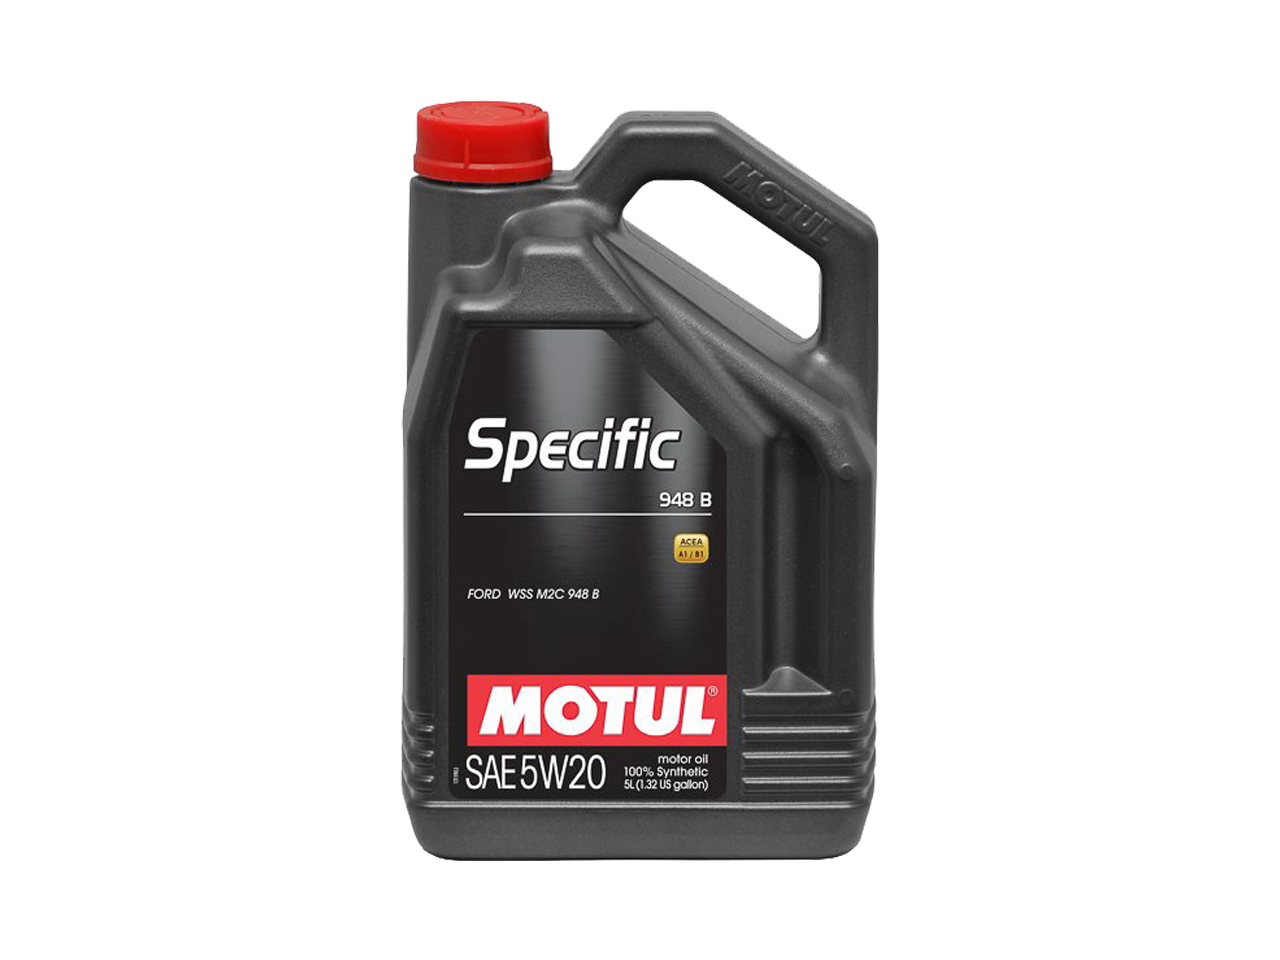 Купить недорого Моторное масло Motul SPECIFIC 948B в Москве